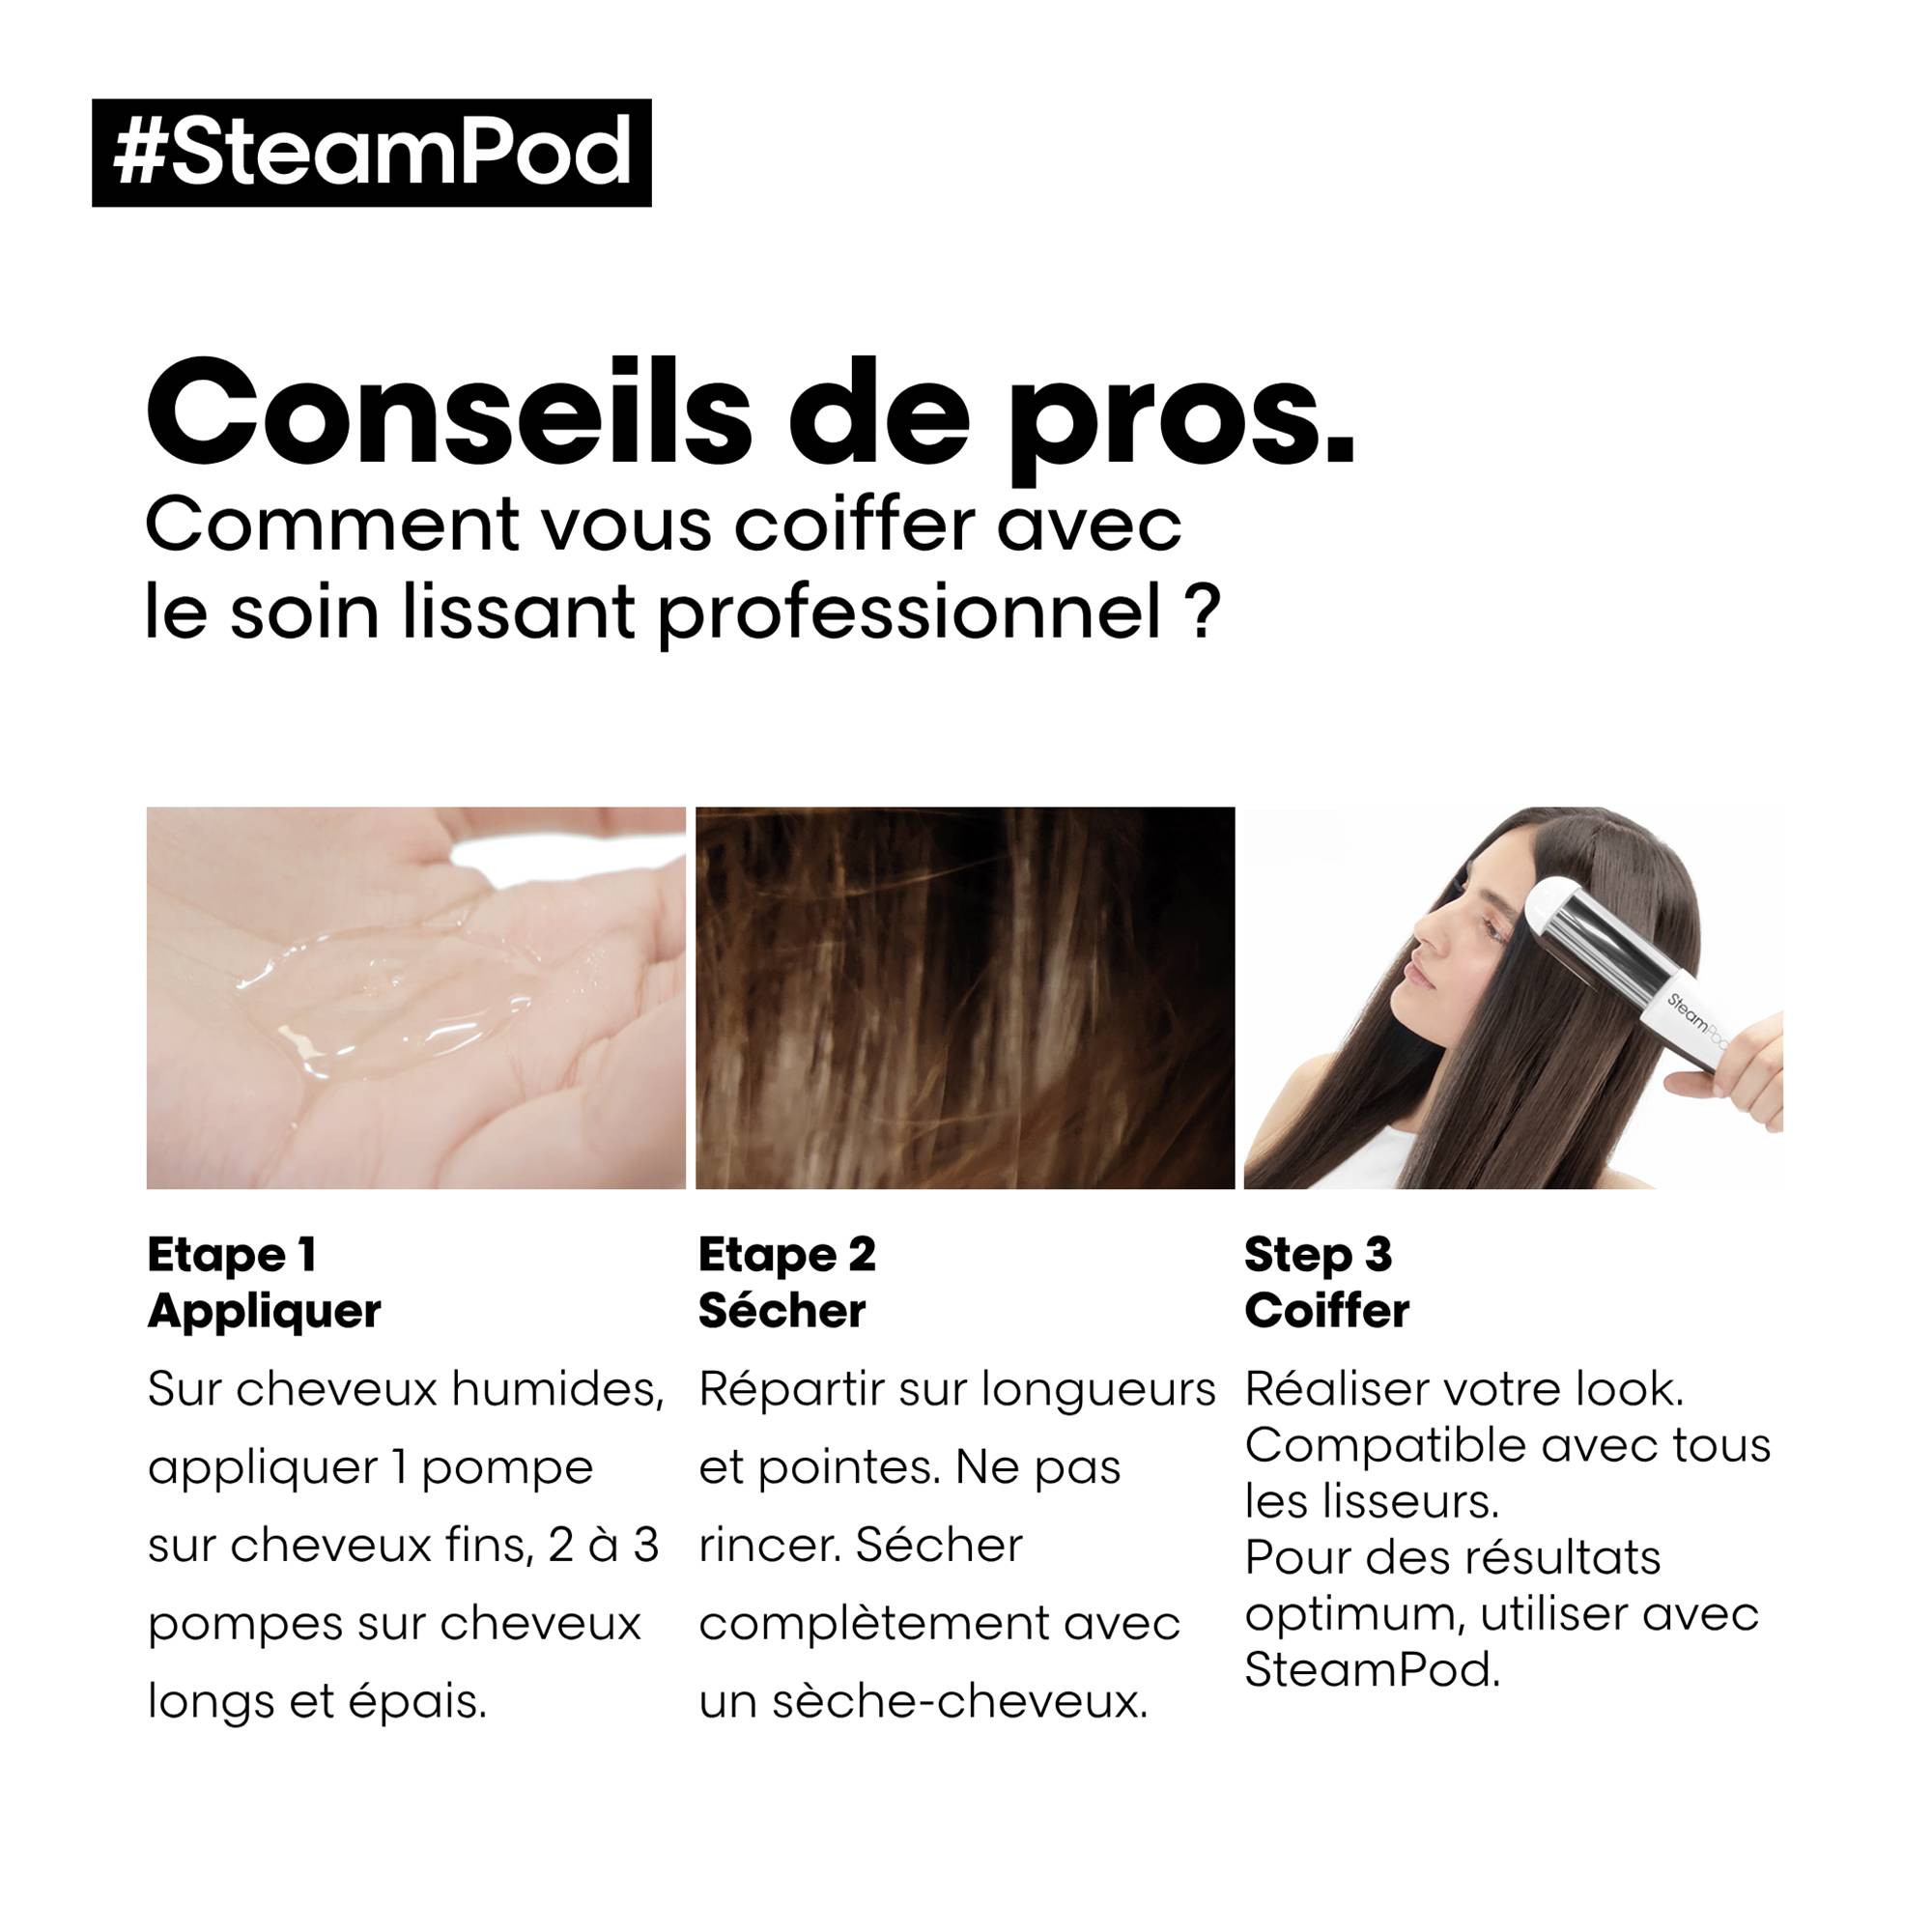 Pack SteamPod 4 lisseur vapeur & soin lissant professionnel et trousse incluse de la marque L'Oréal Professionnel Contenance 50ml - 6